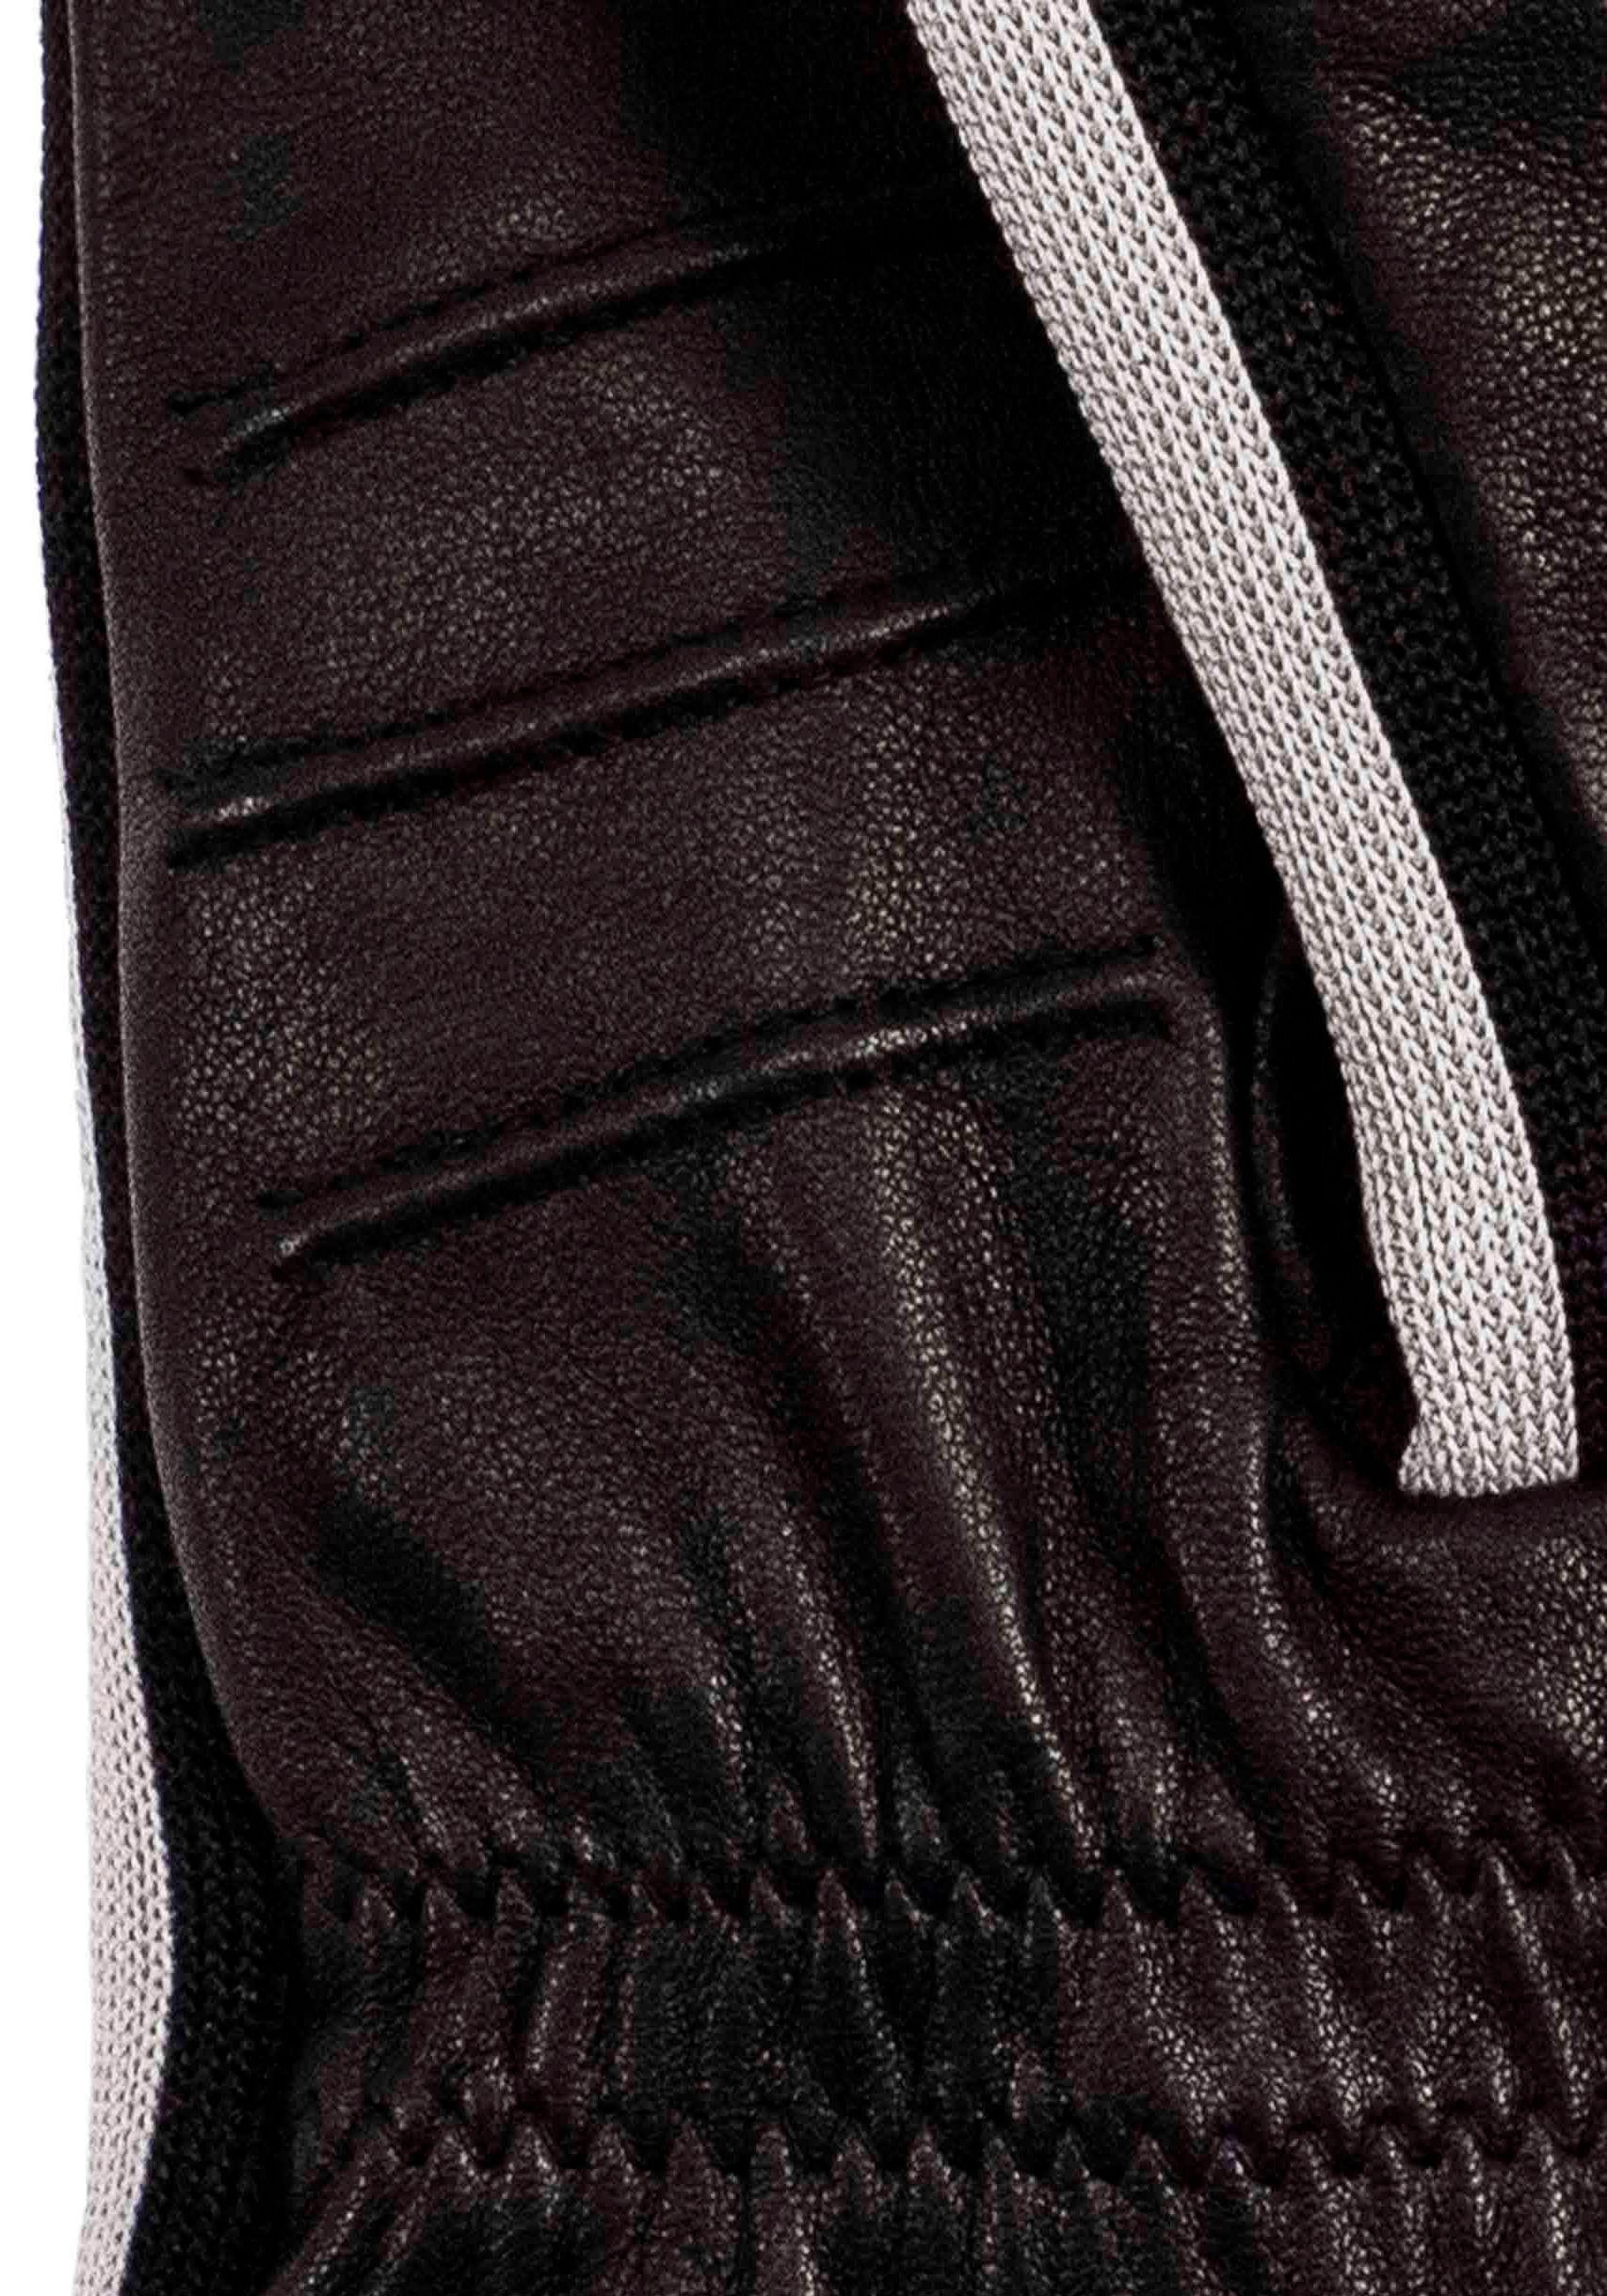 KESSLER Lederhandschuhe Jack Touchfunktion black Look mit im Design Touch sportliches Sneaker